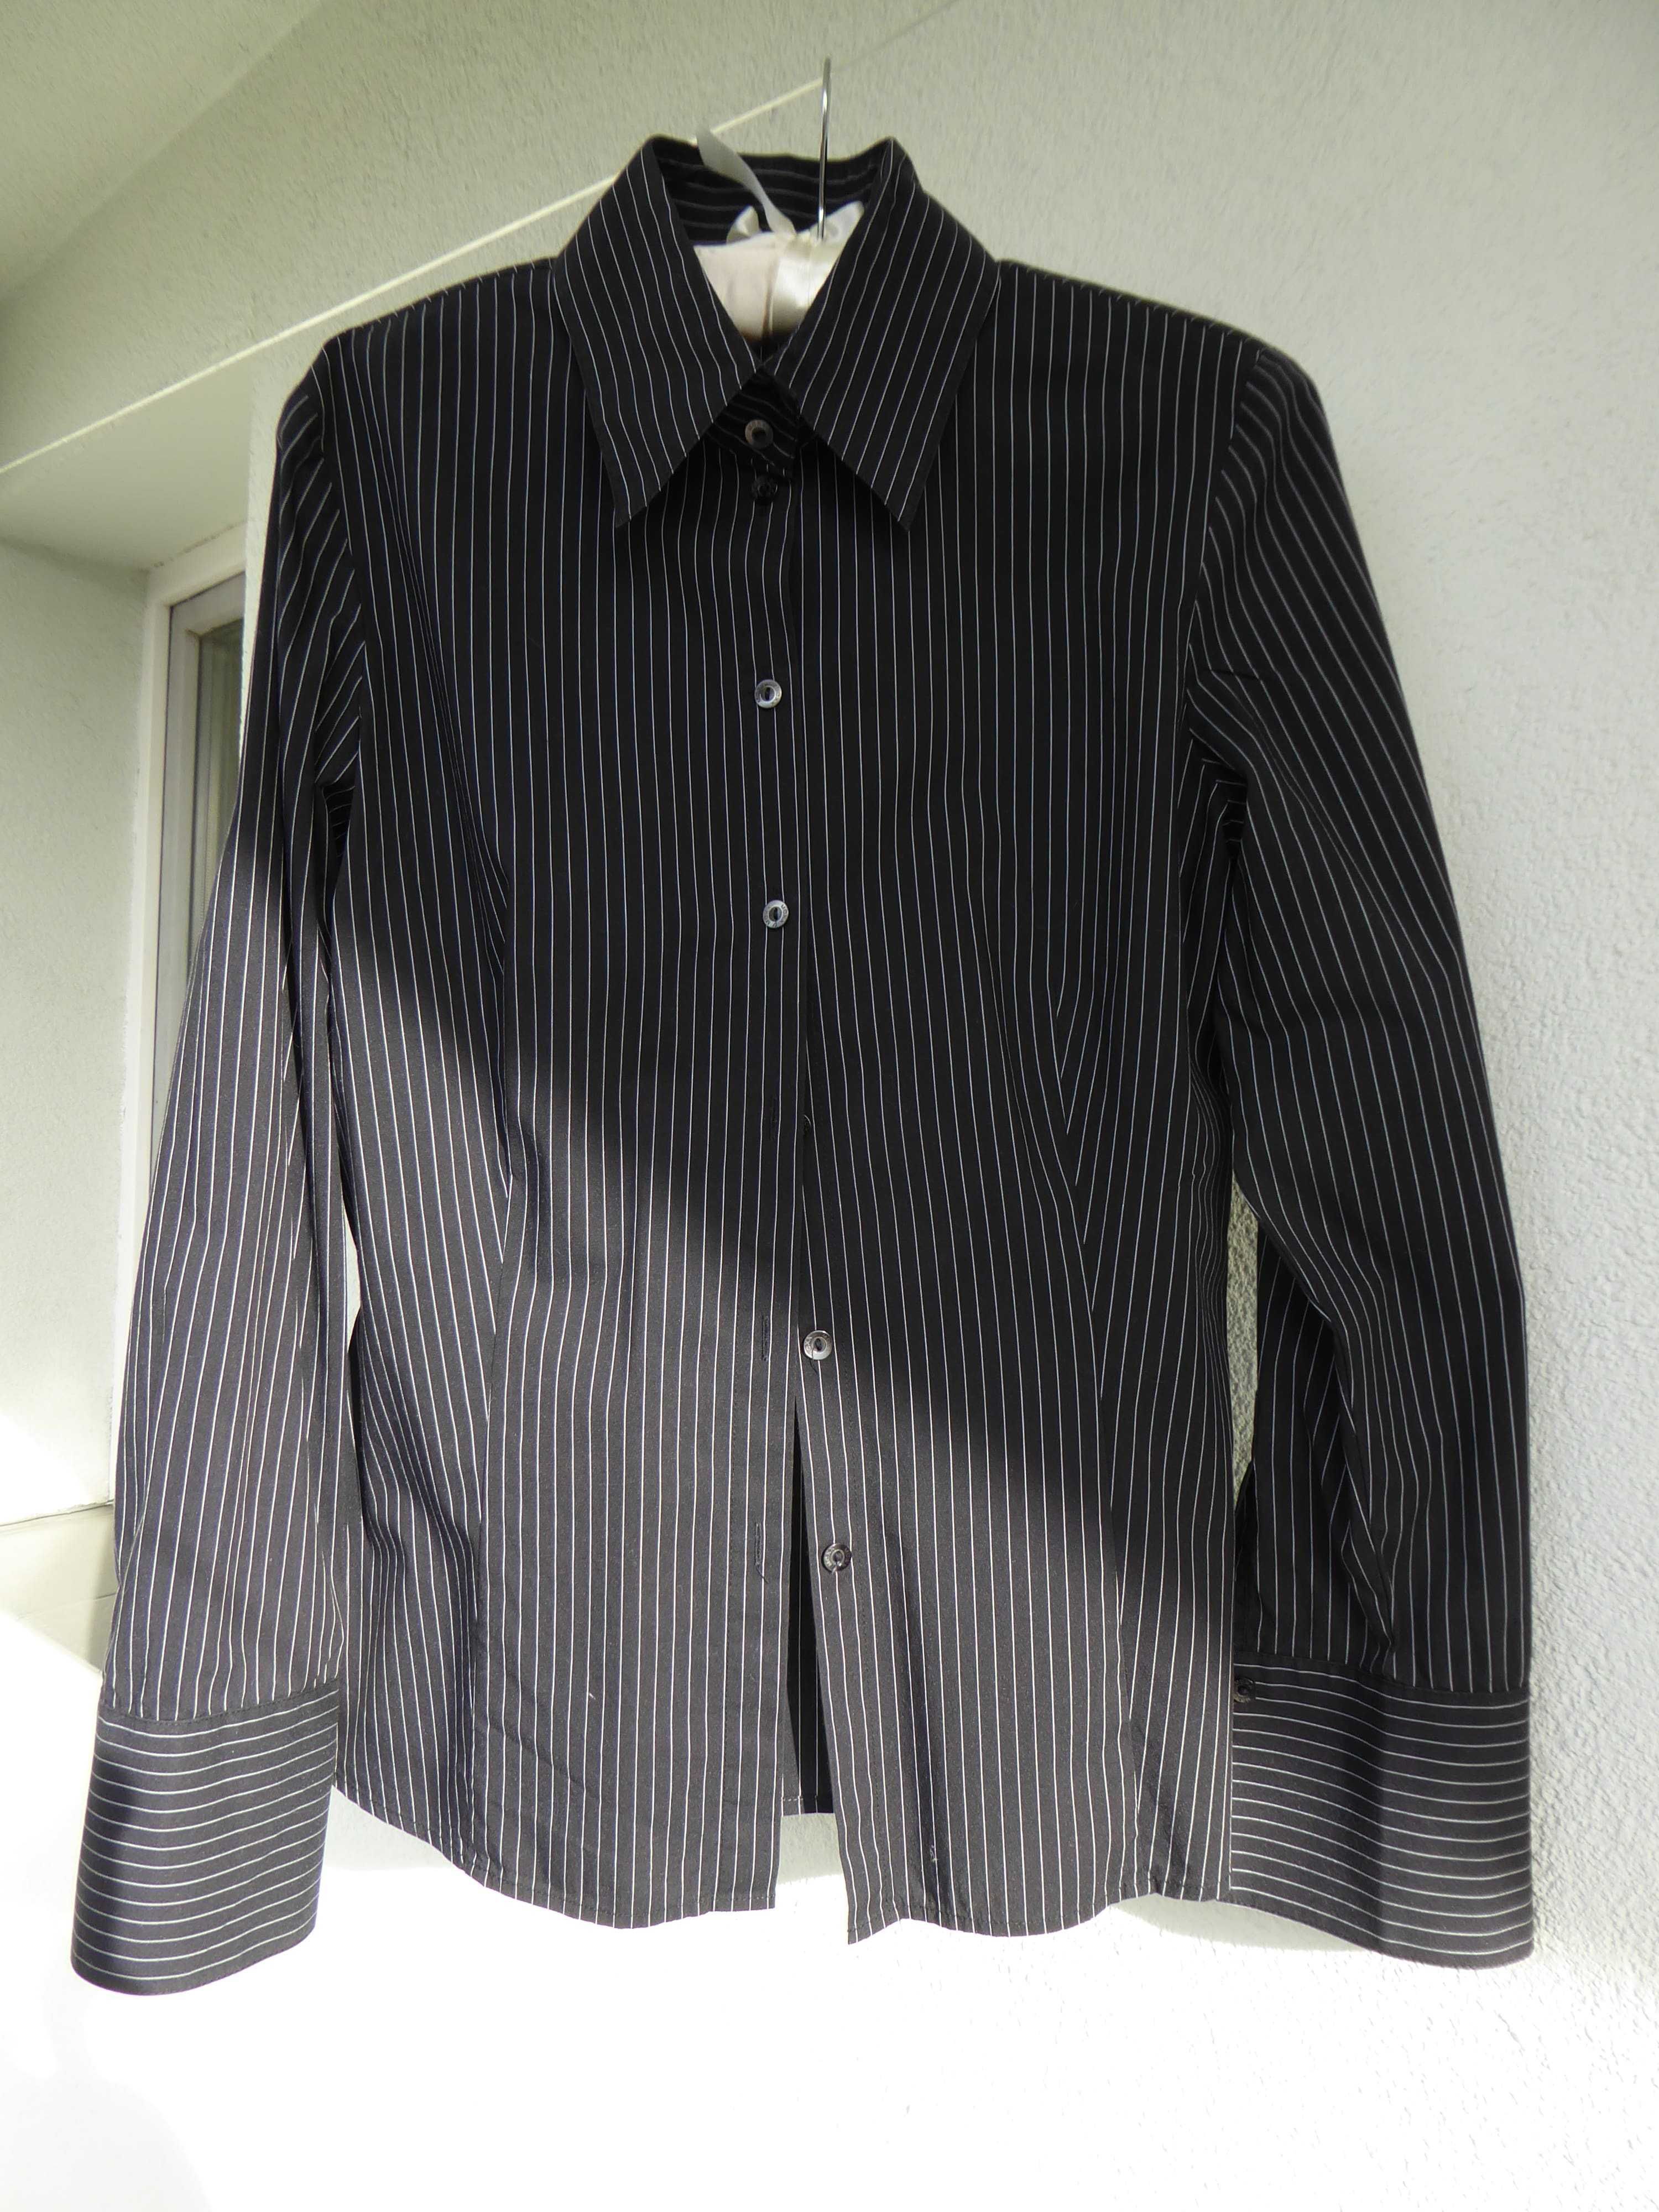 Czarna damska koszula w biały prążek firmy Mexx, rozmiar 38